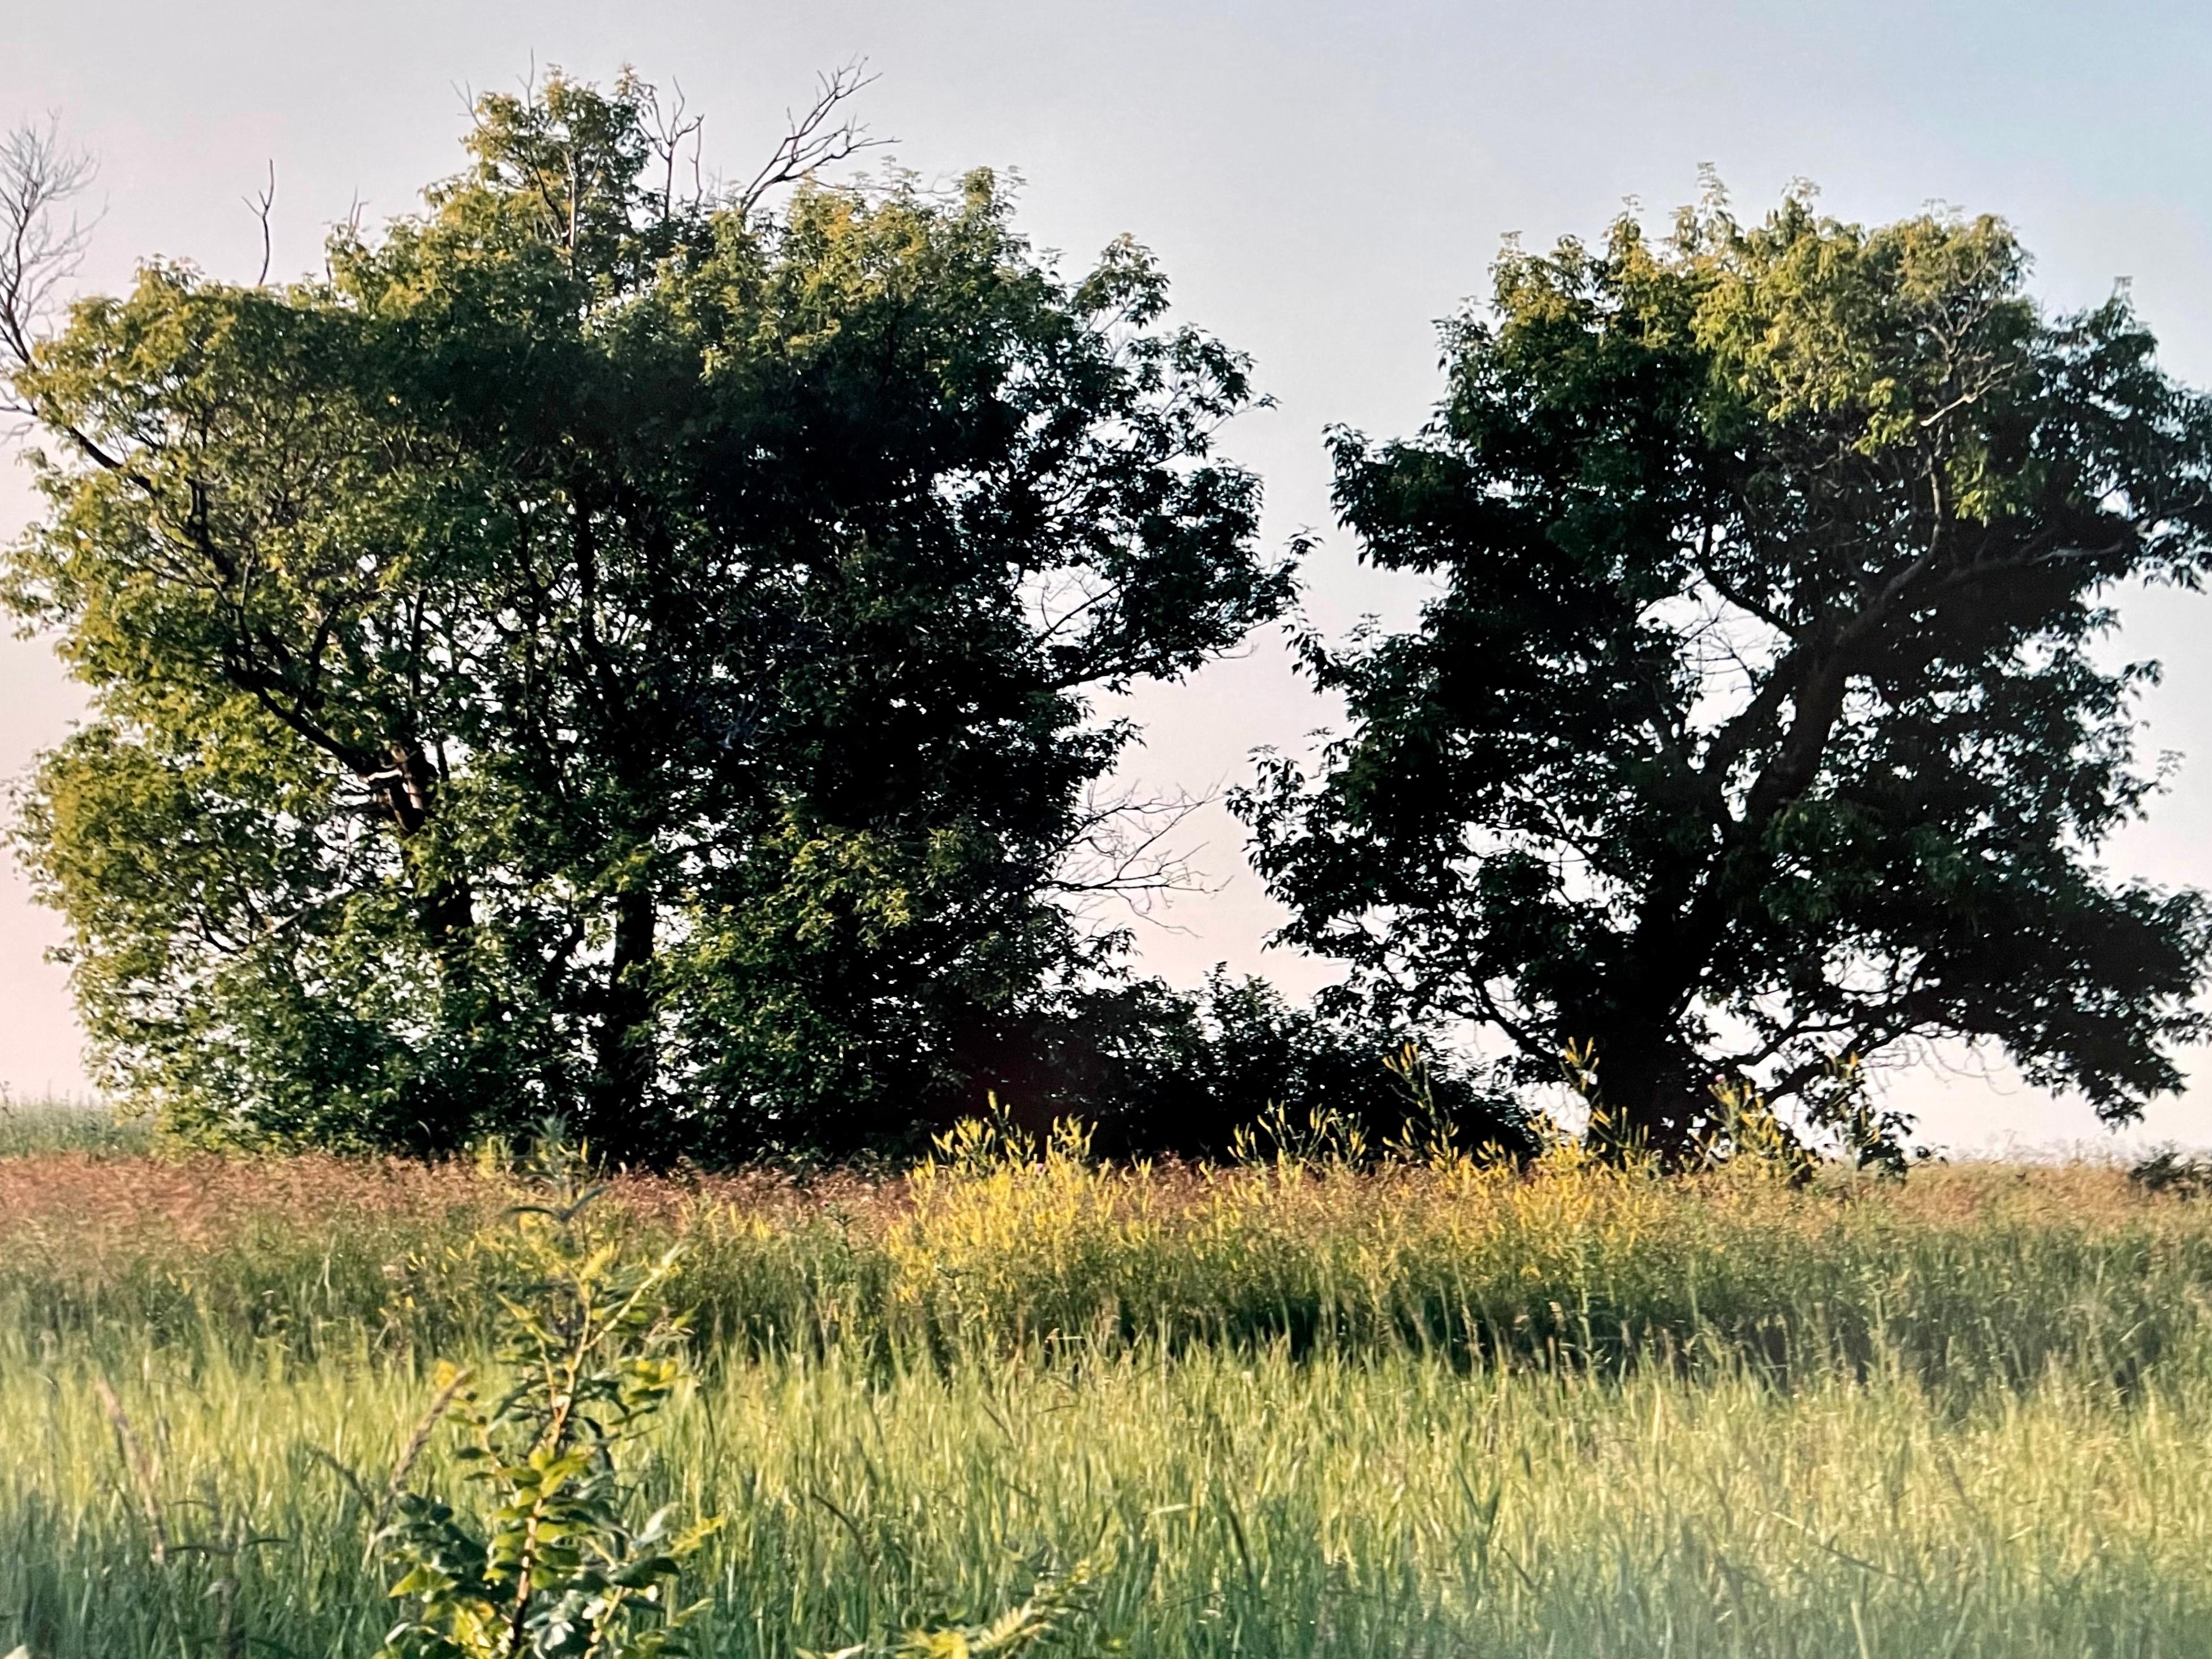 Homestead du canton d'Everts, été 1993
Fabuleuse photographie de paysage américain d'une scène de paysage rural. 
d'une petite édition de 20 exemplaires signés à la main
Tirage chromogène grand format sur papier Kodak Professional
Les feuilles font